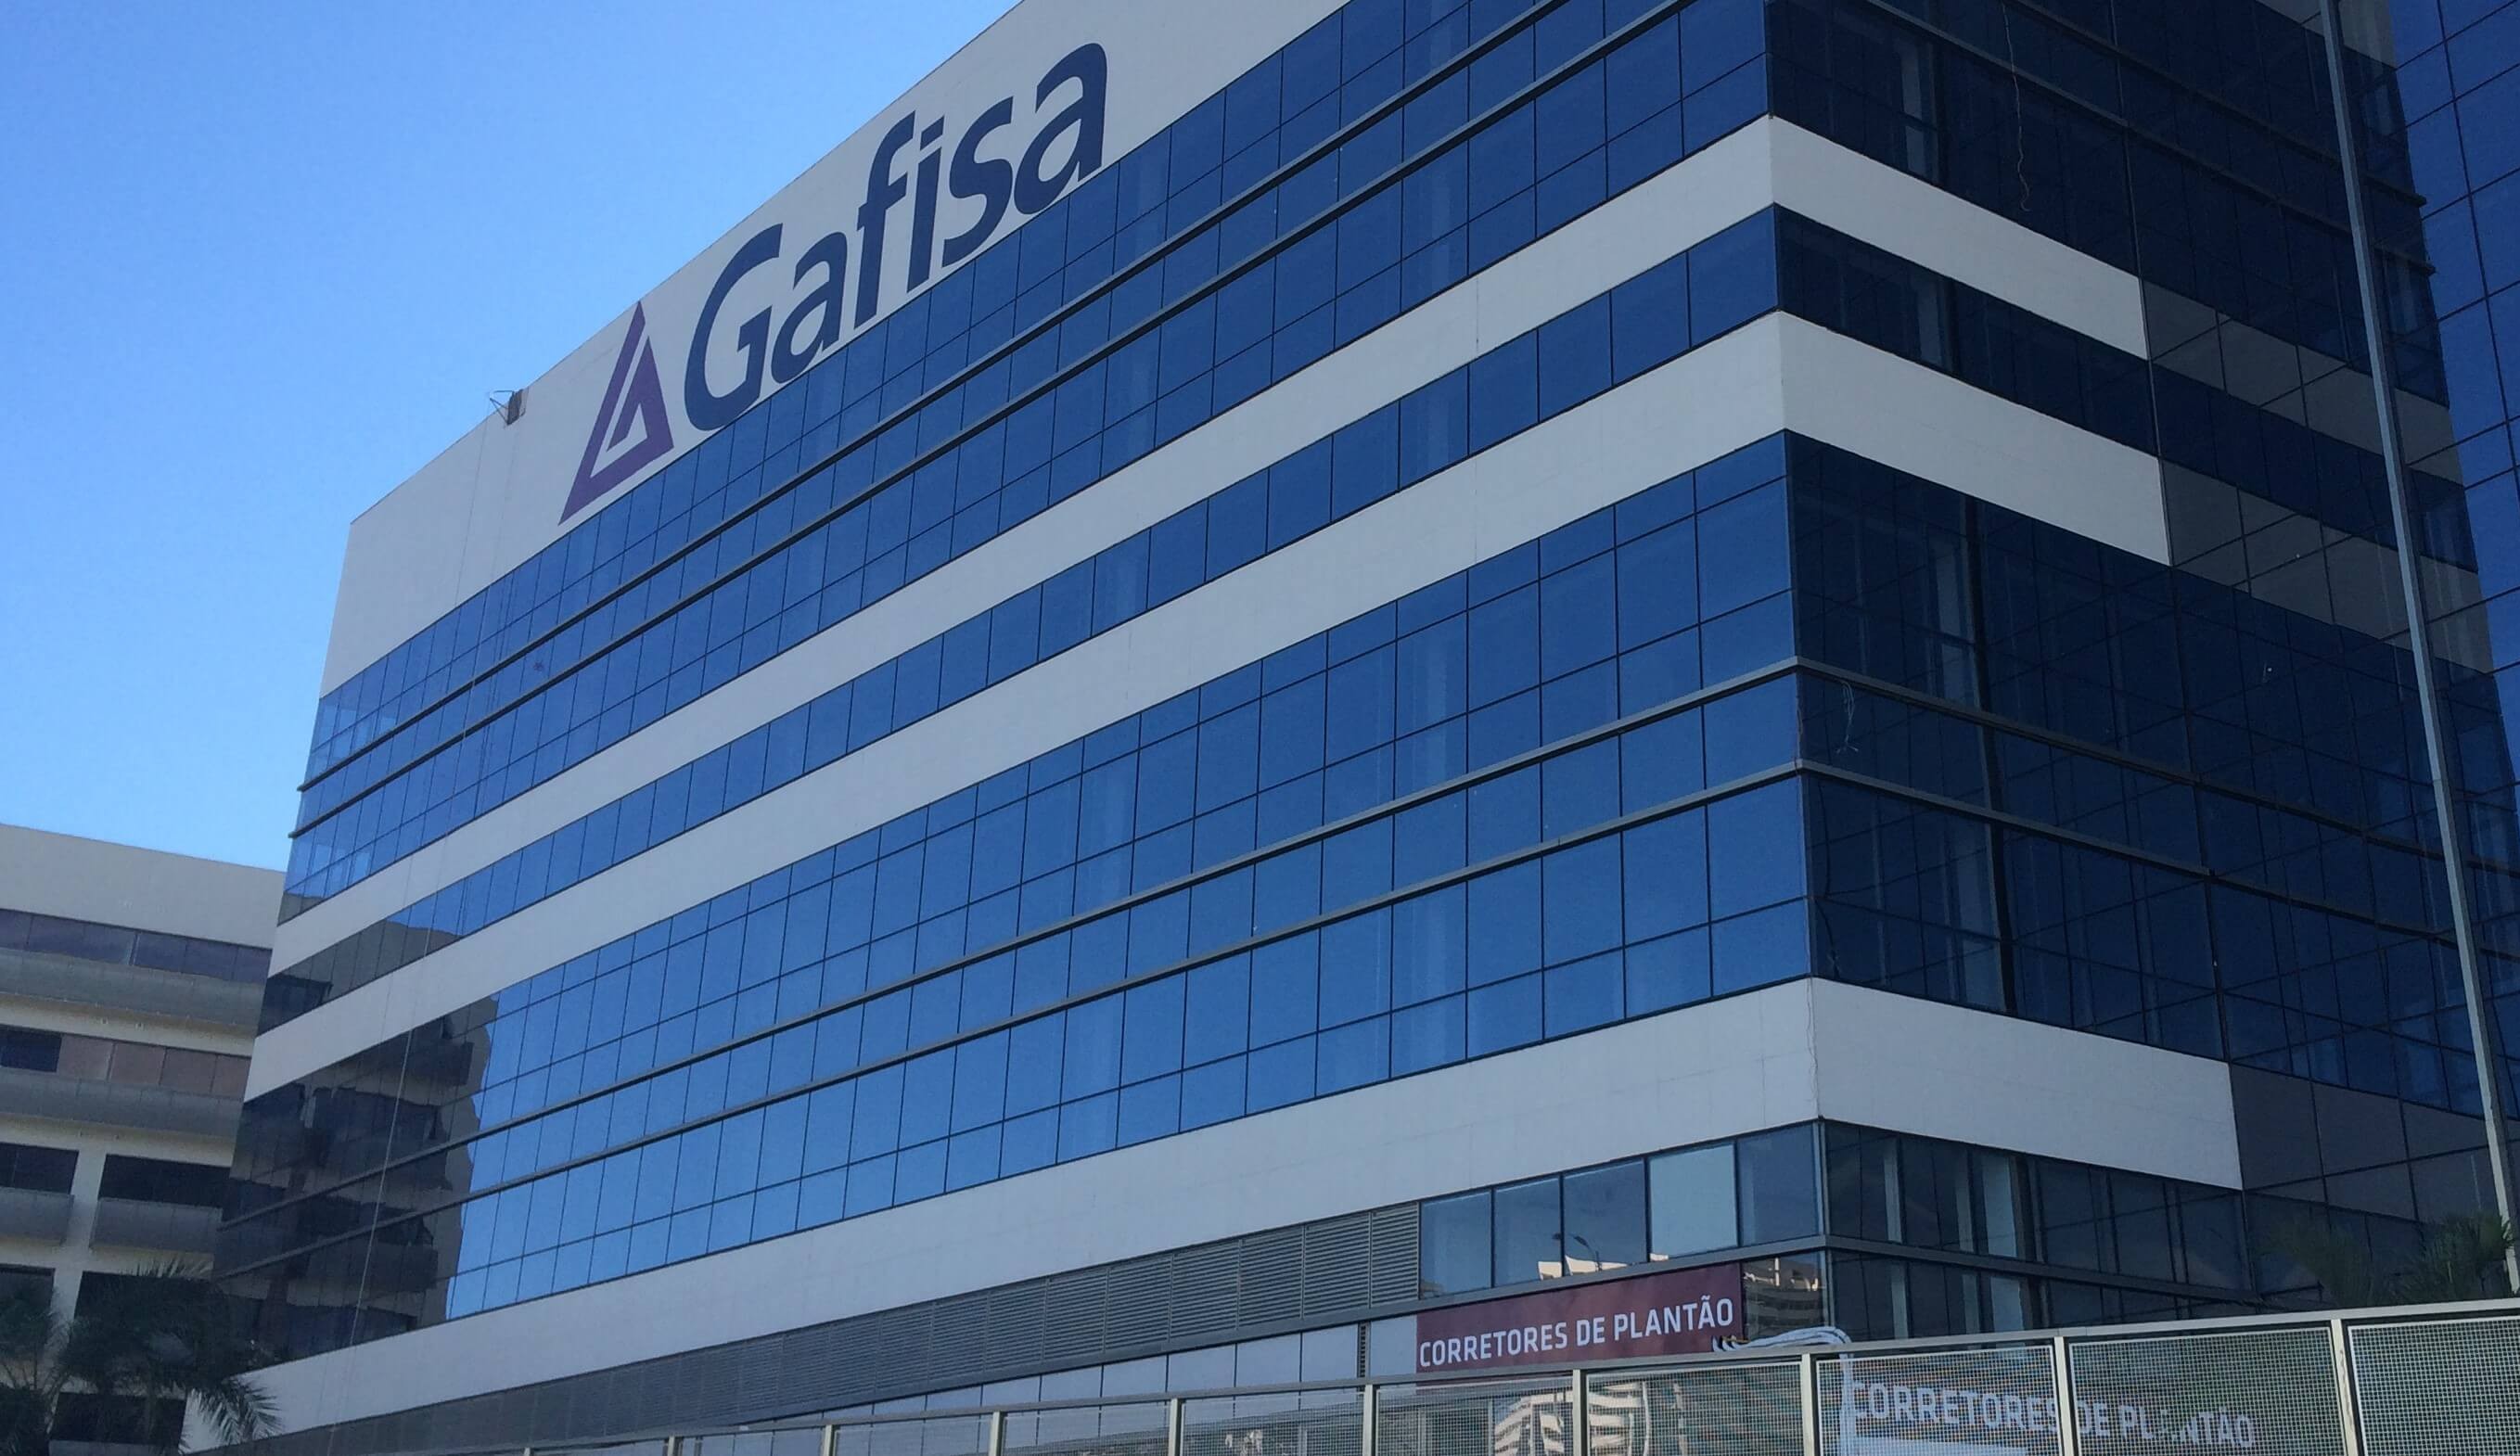 Com alta de quase 52% nas ações, Gafisa é destaque na bolsa este mês